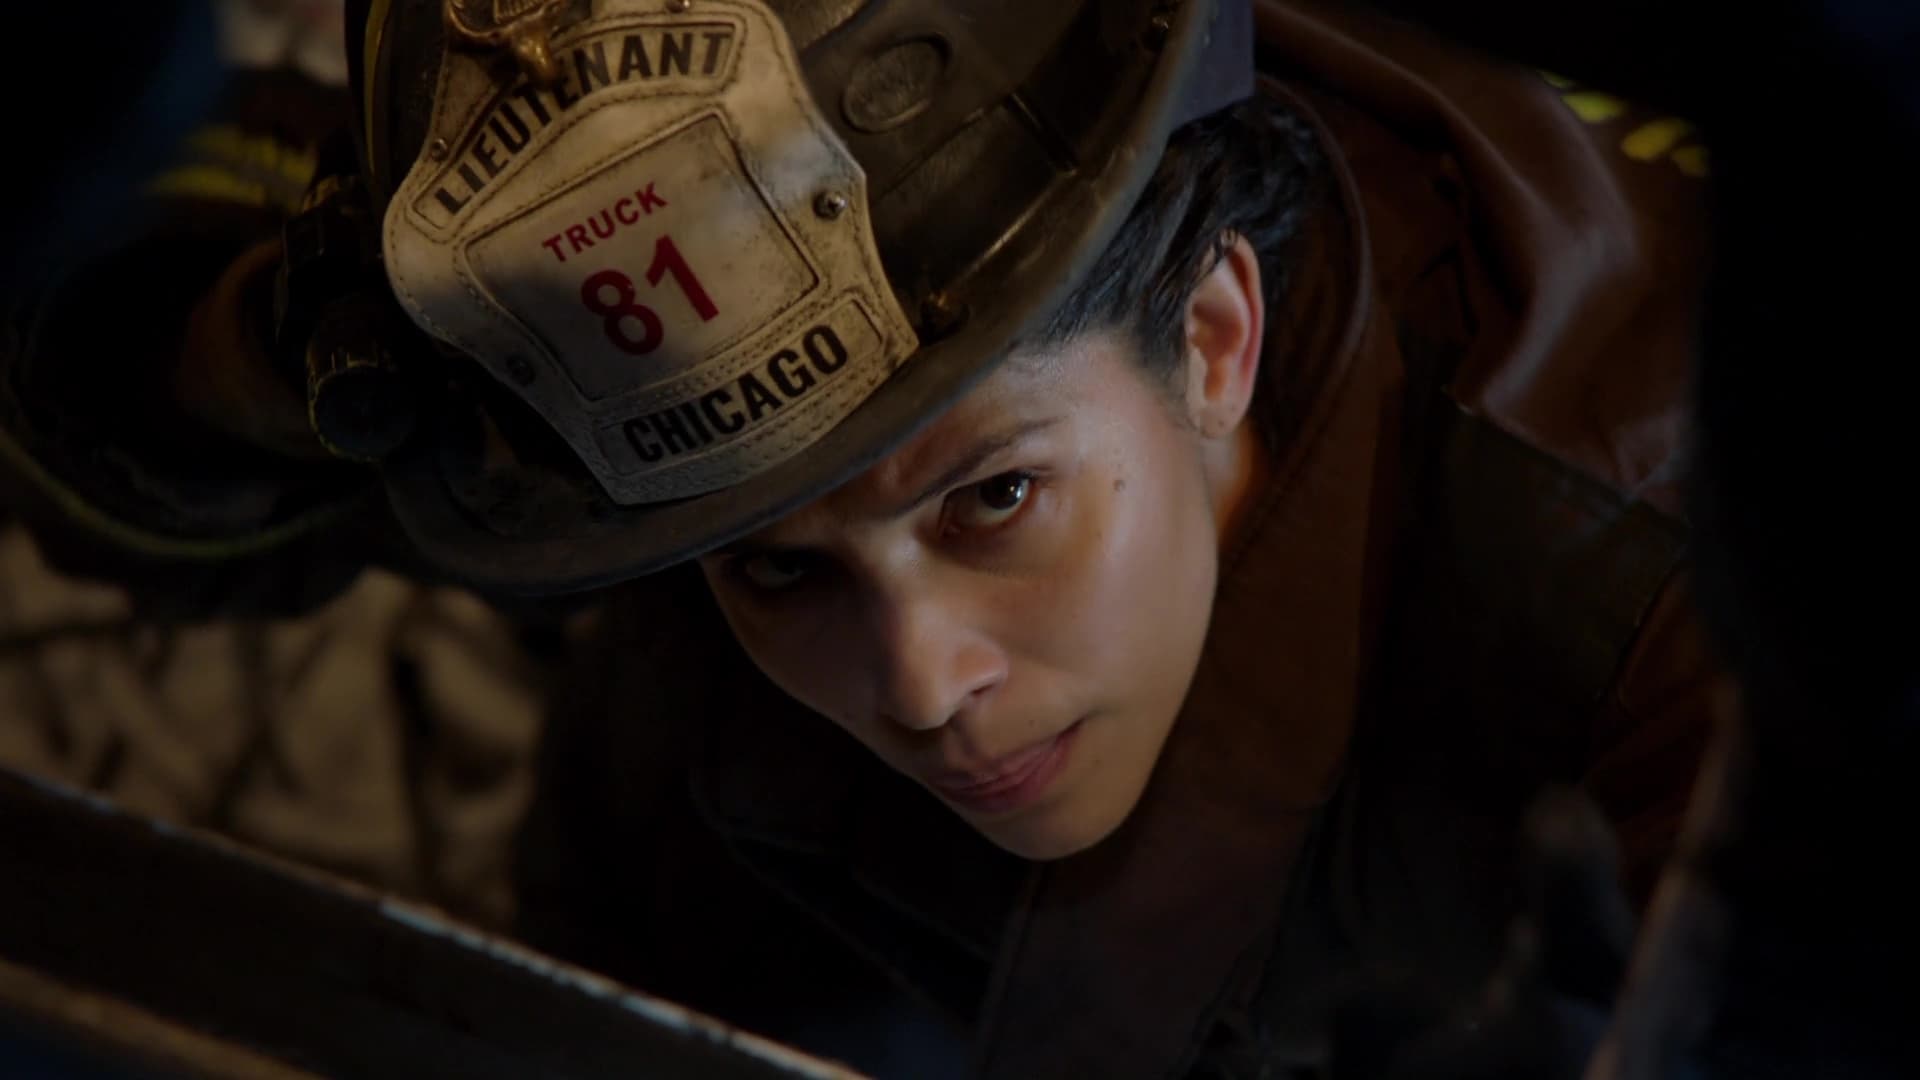 Assistir Chicago Fire: Heróis Contra o Fogo: 11x16 Online - Tua Serie